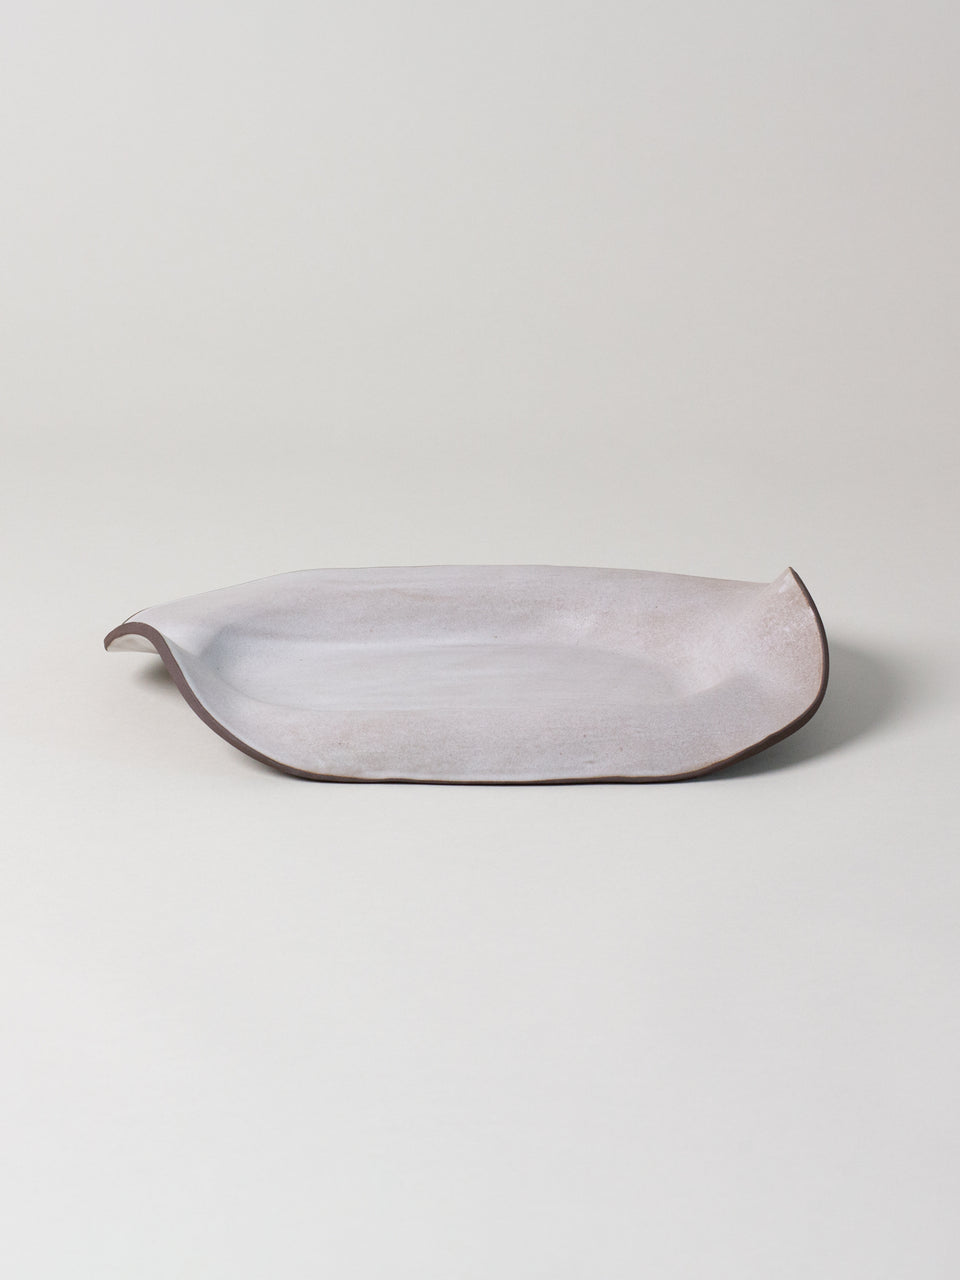 Manta Oval Platter, Birch